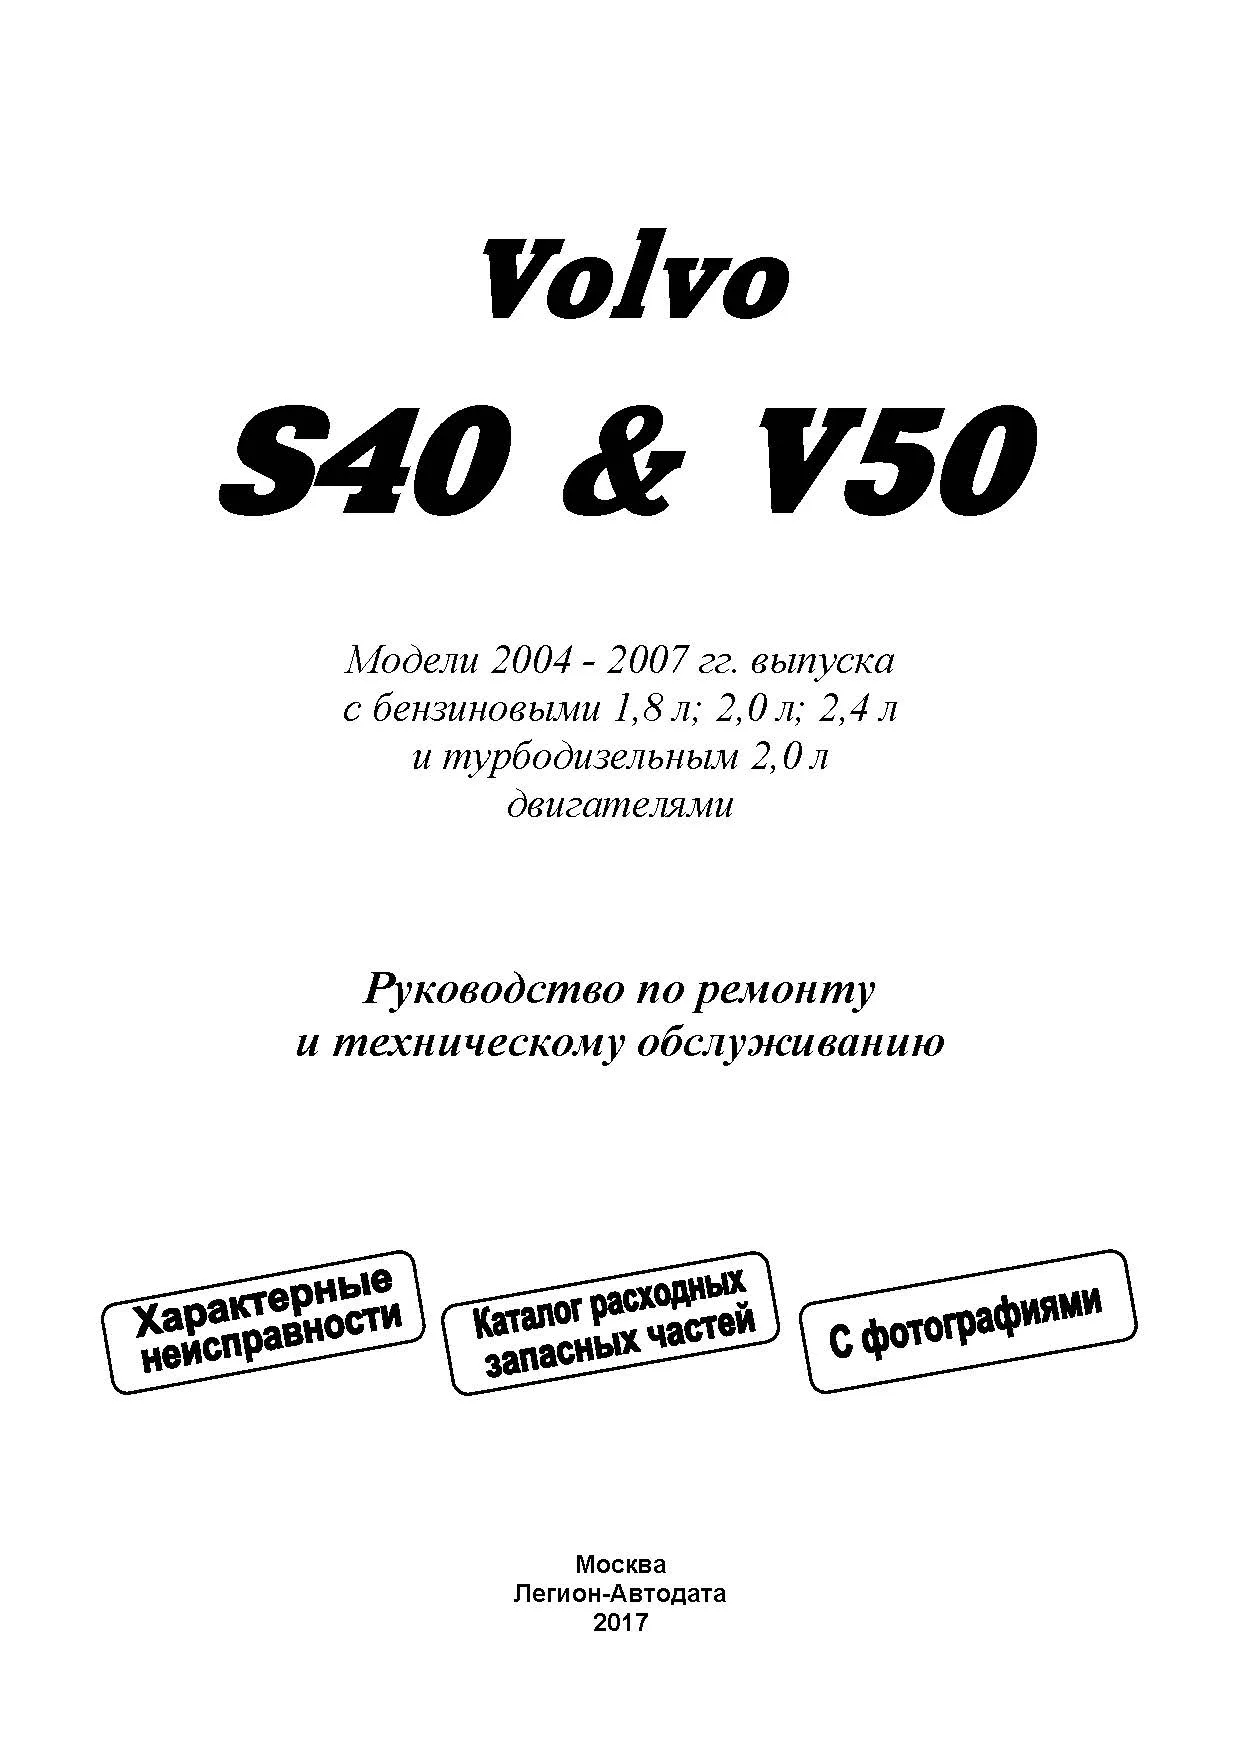 Книга Volvo S40, V50 2004-2007 бензин, дизель, электросхемы, каталог з/ч, ч/б фото. Руководство по ремонту и эксплуатации автомобиля. Легион-Aвтодата